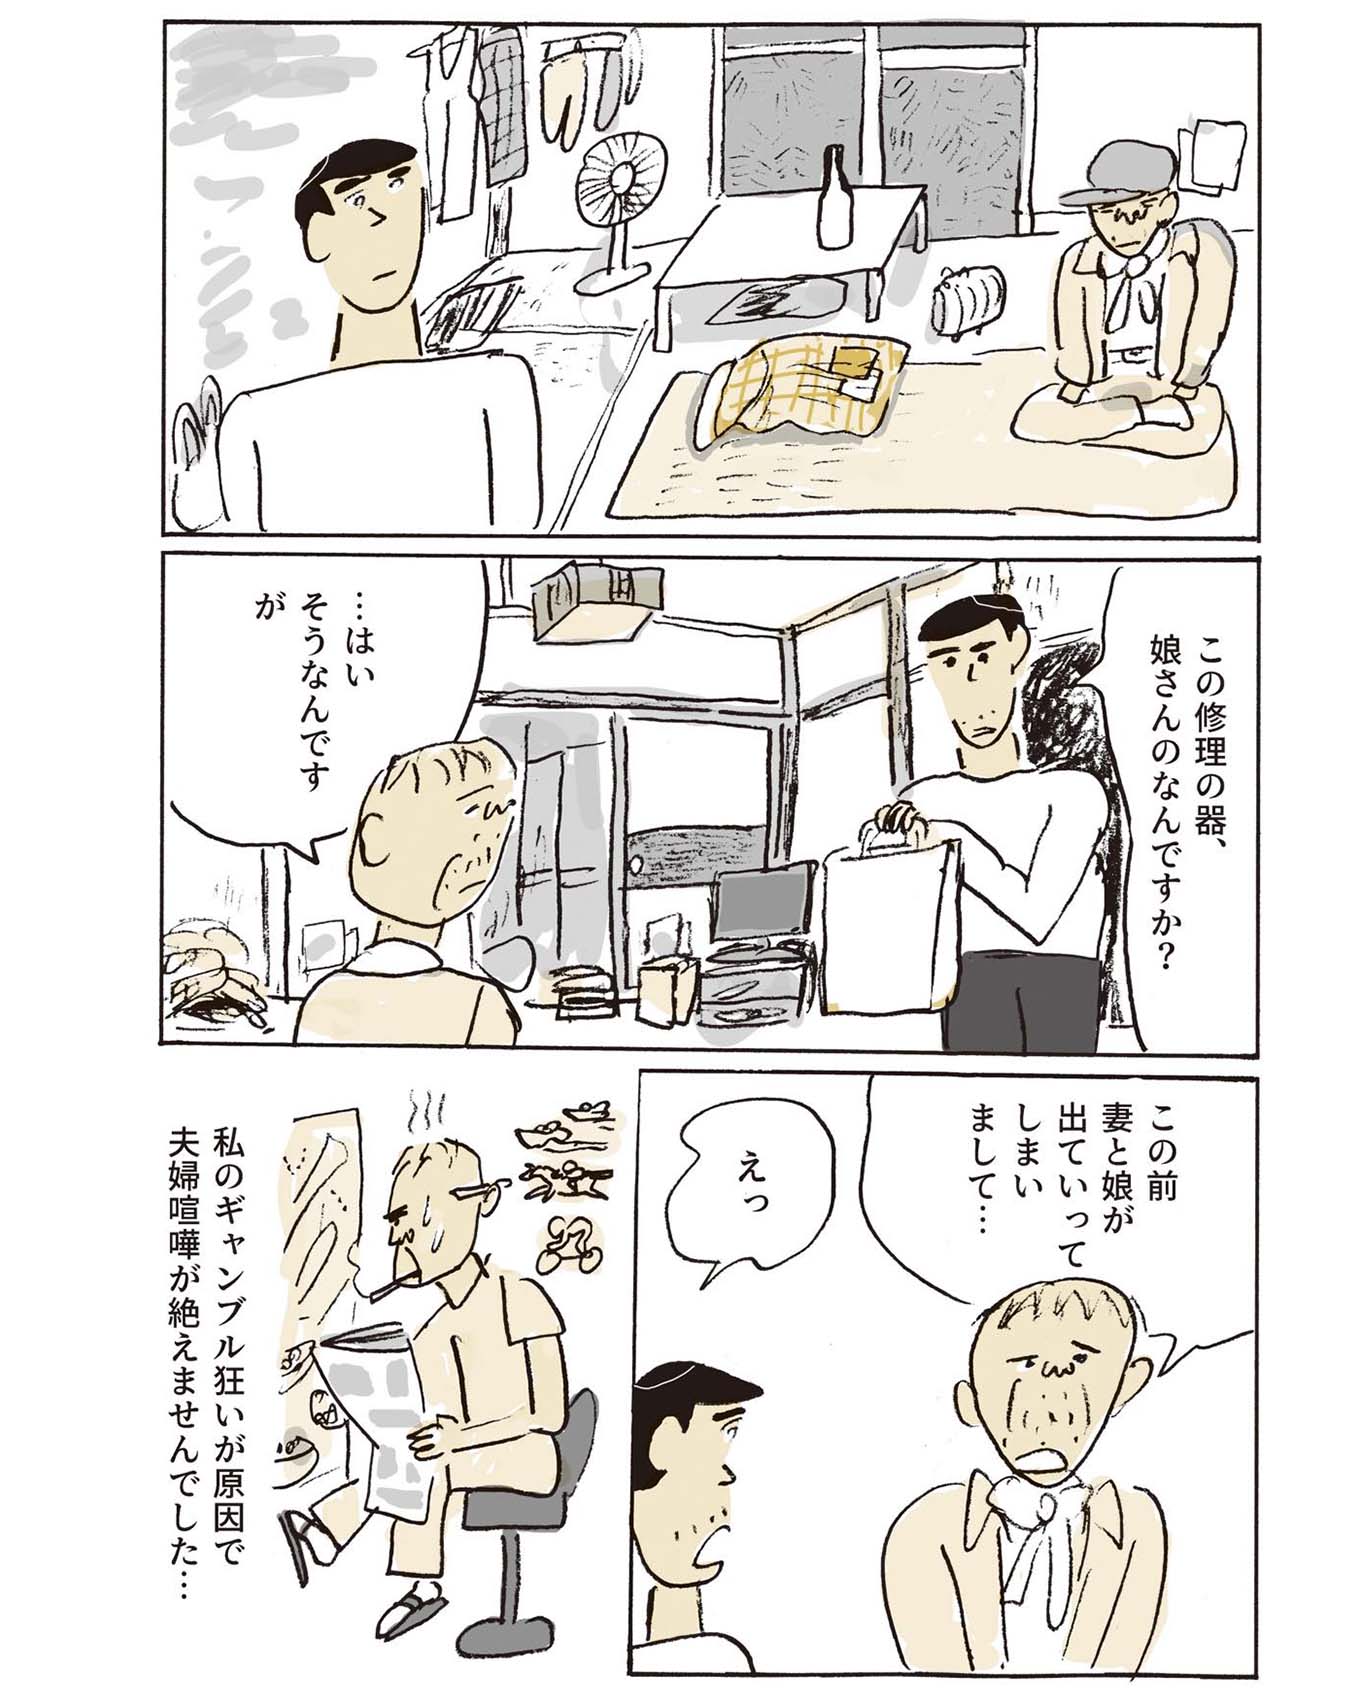 【話題の漫画】堀道広さんの『金継ぎおじさん』第10話をお届け。割…